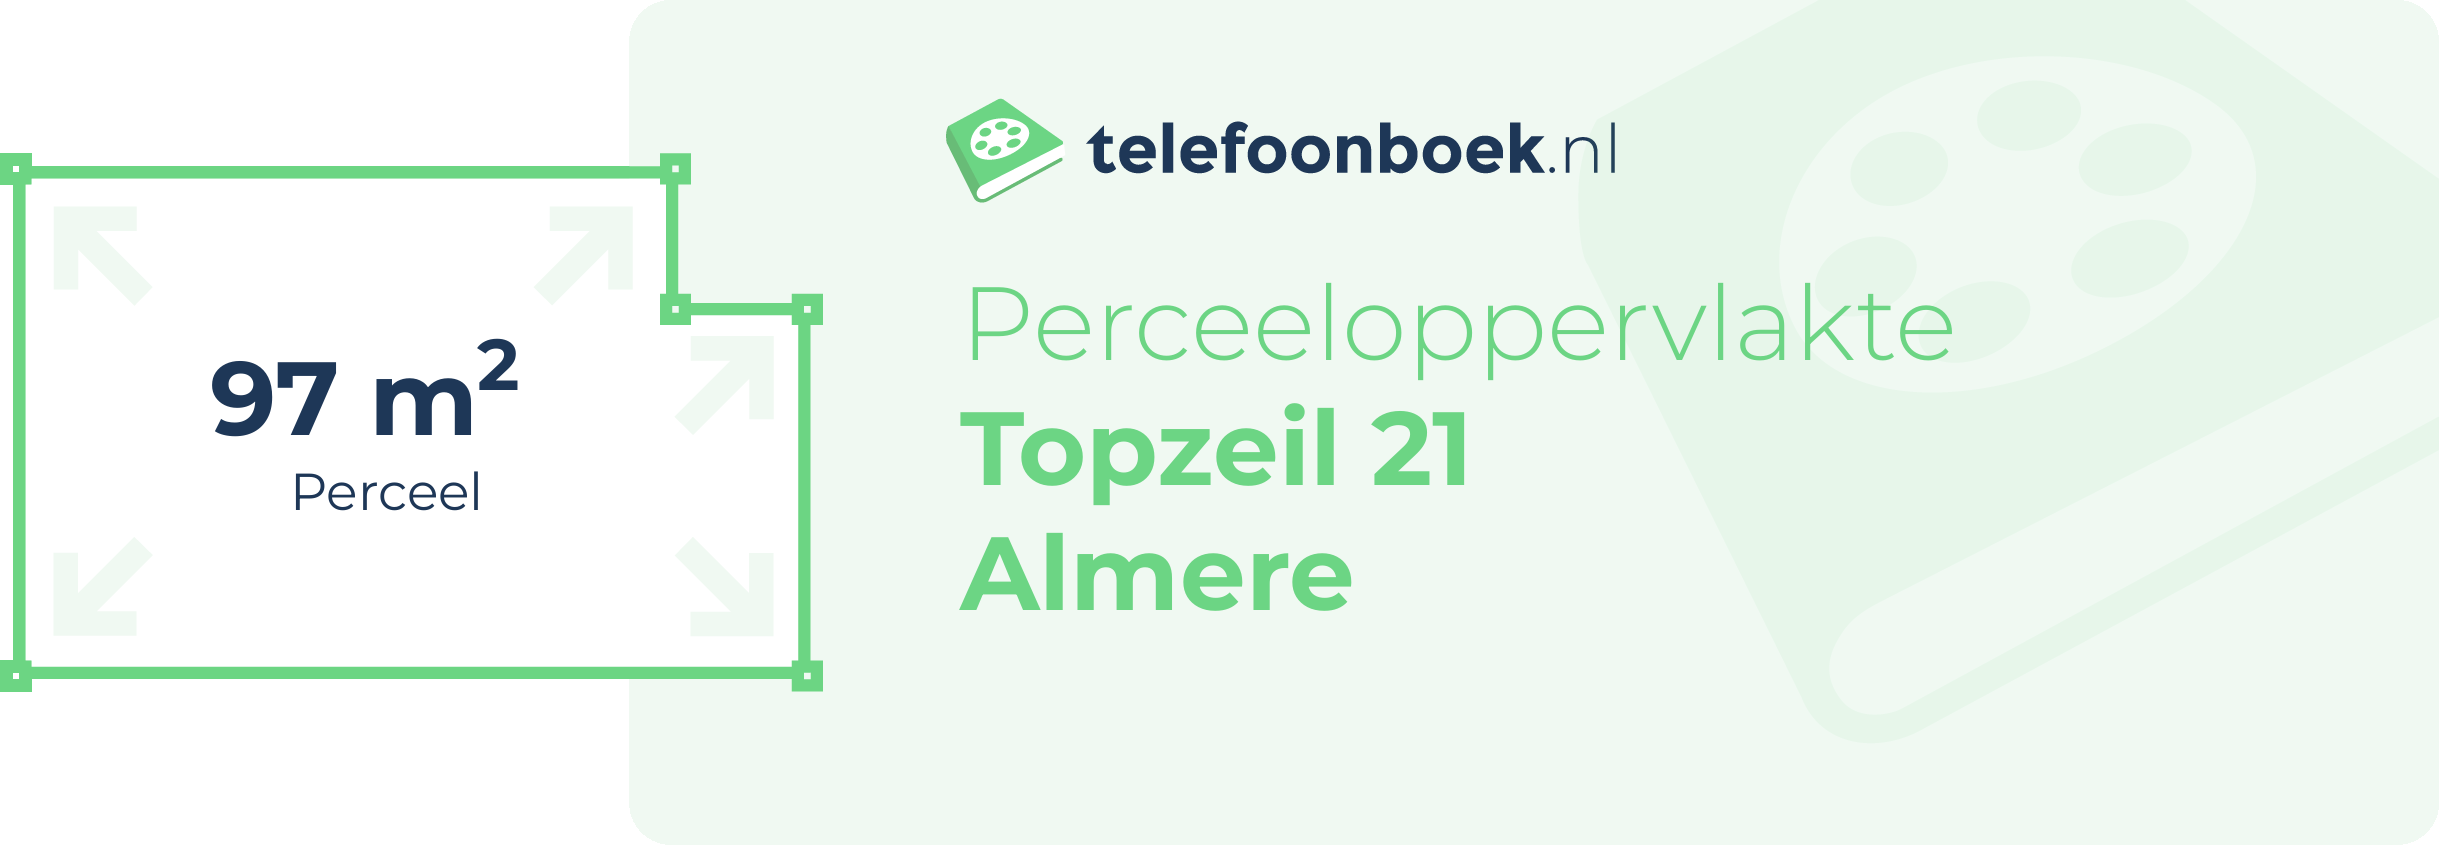 Perceeloppervlakte Topzeil 21 Almere